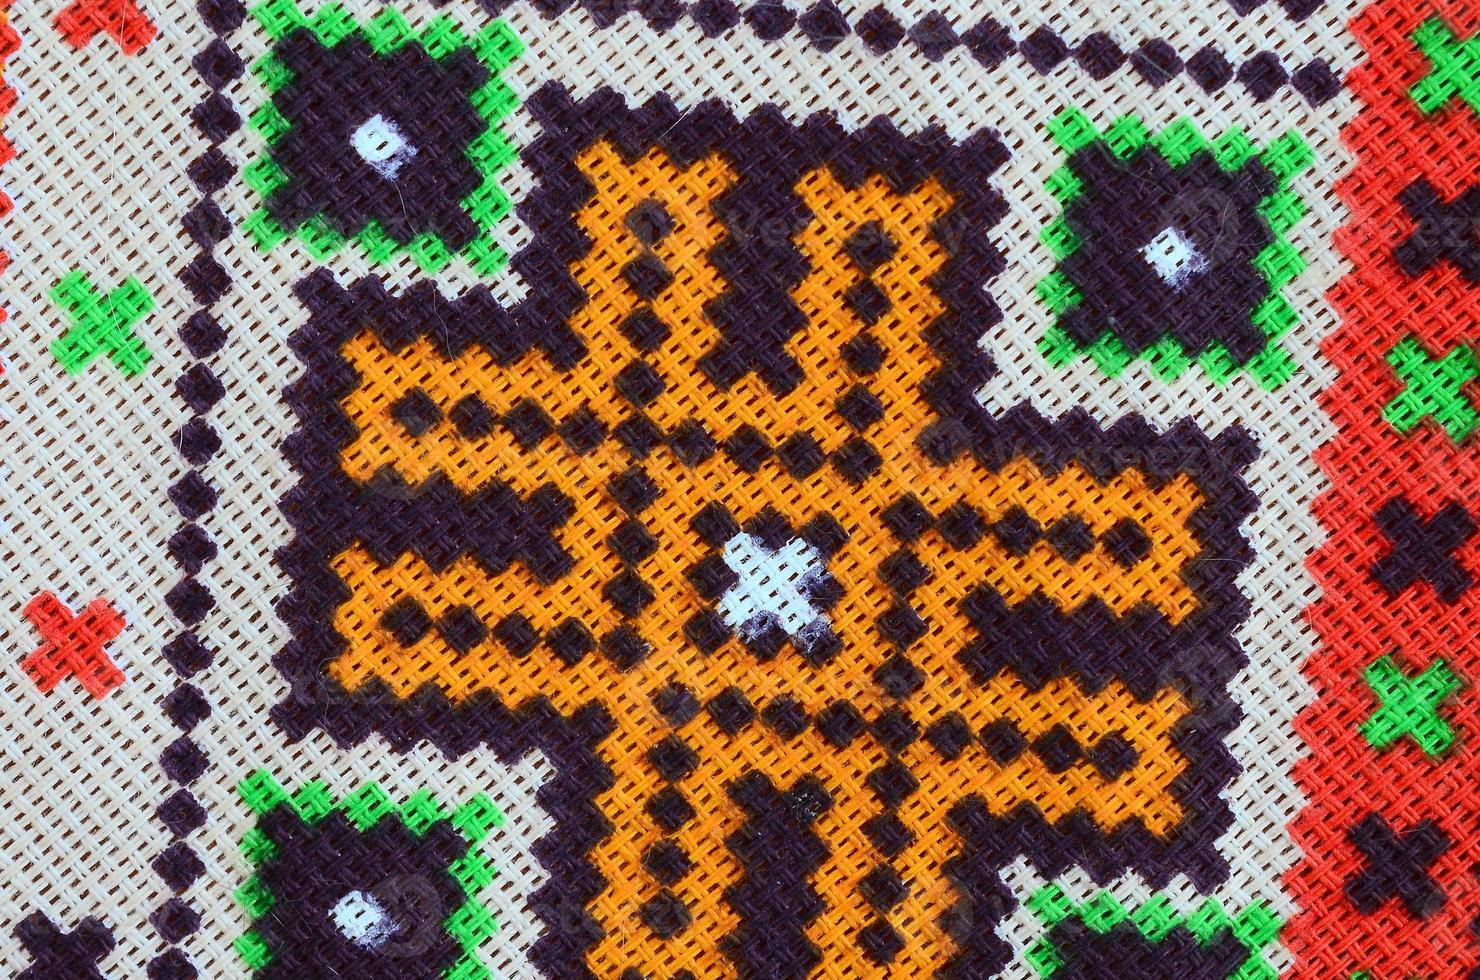 motif de broderie tricoté d'art populaire ukrainien traditionnel sur tissu textile photo